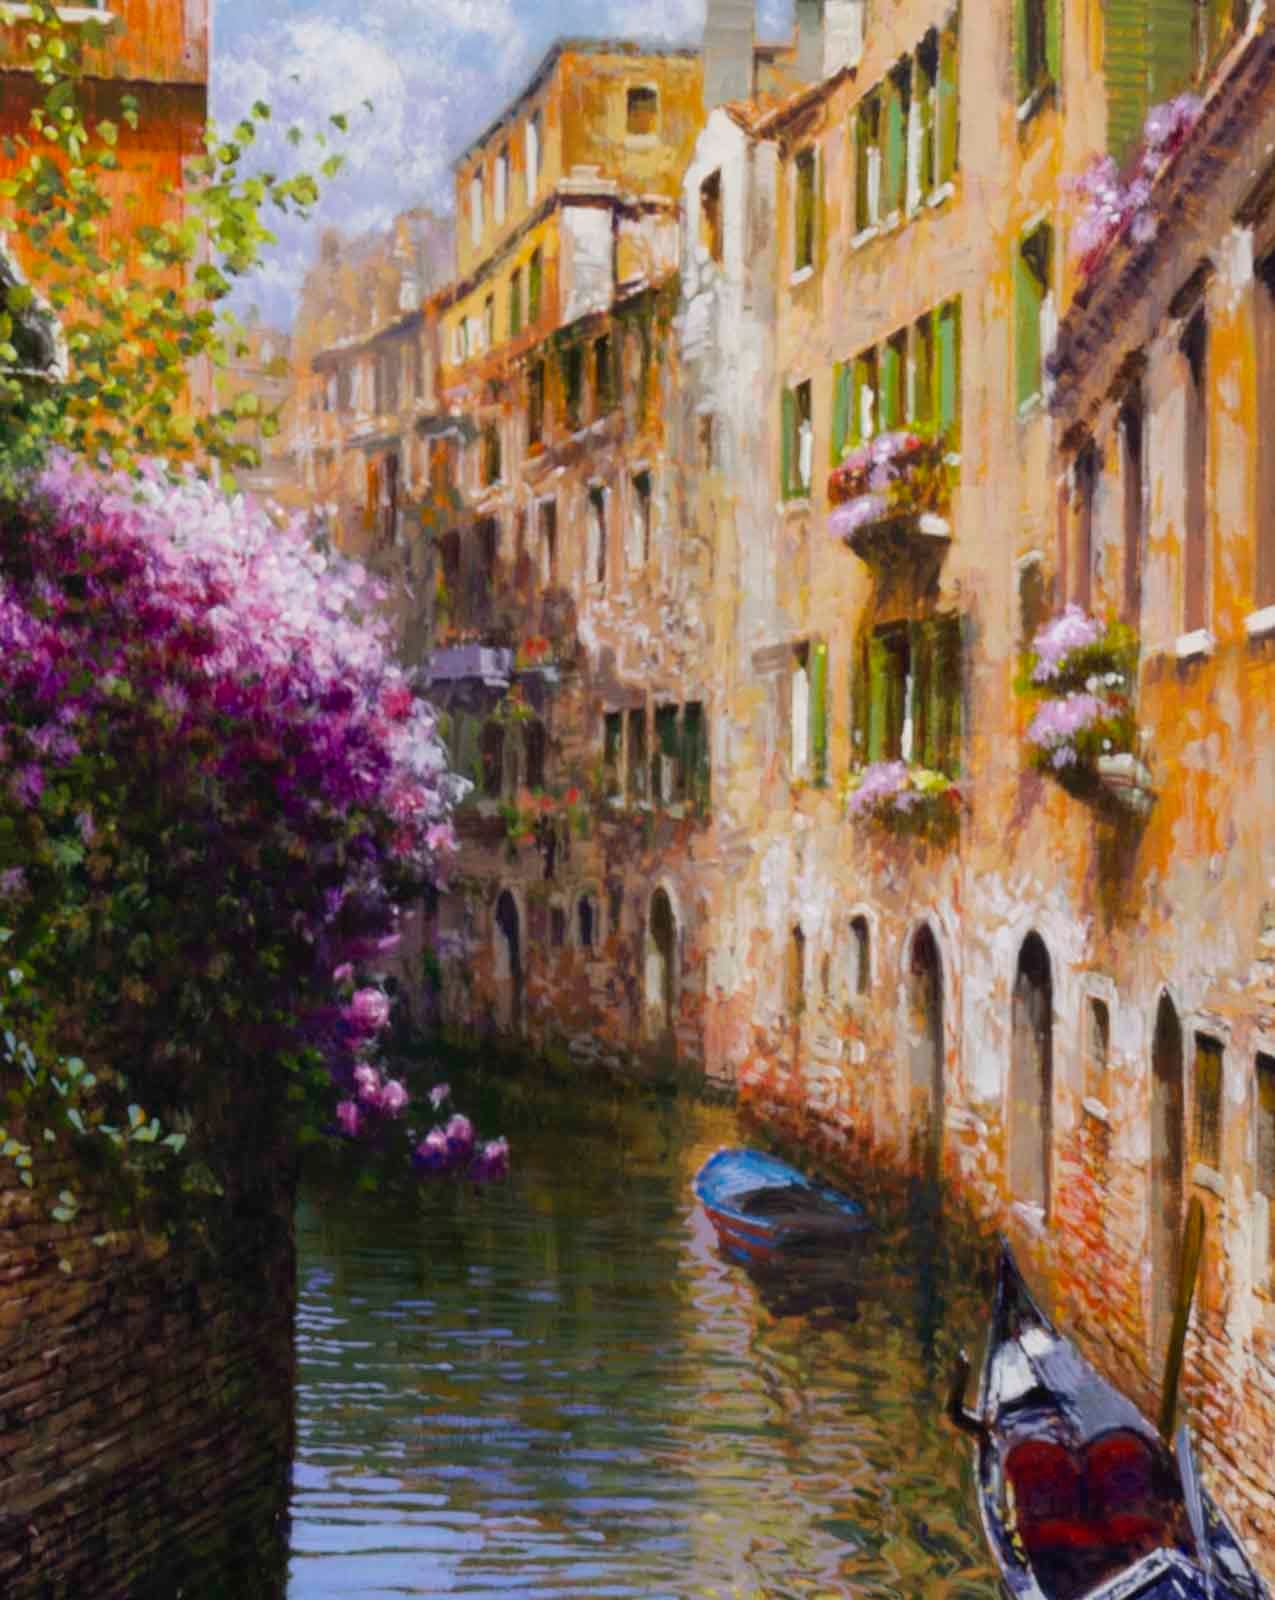 Venice in Bloom